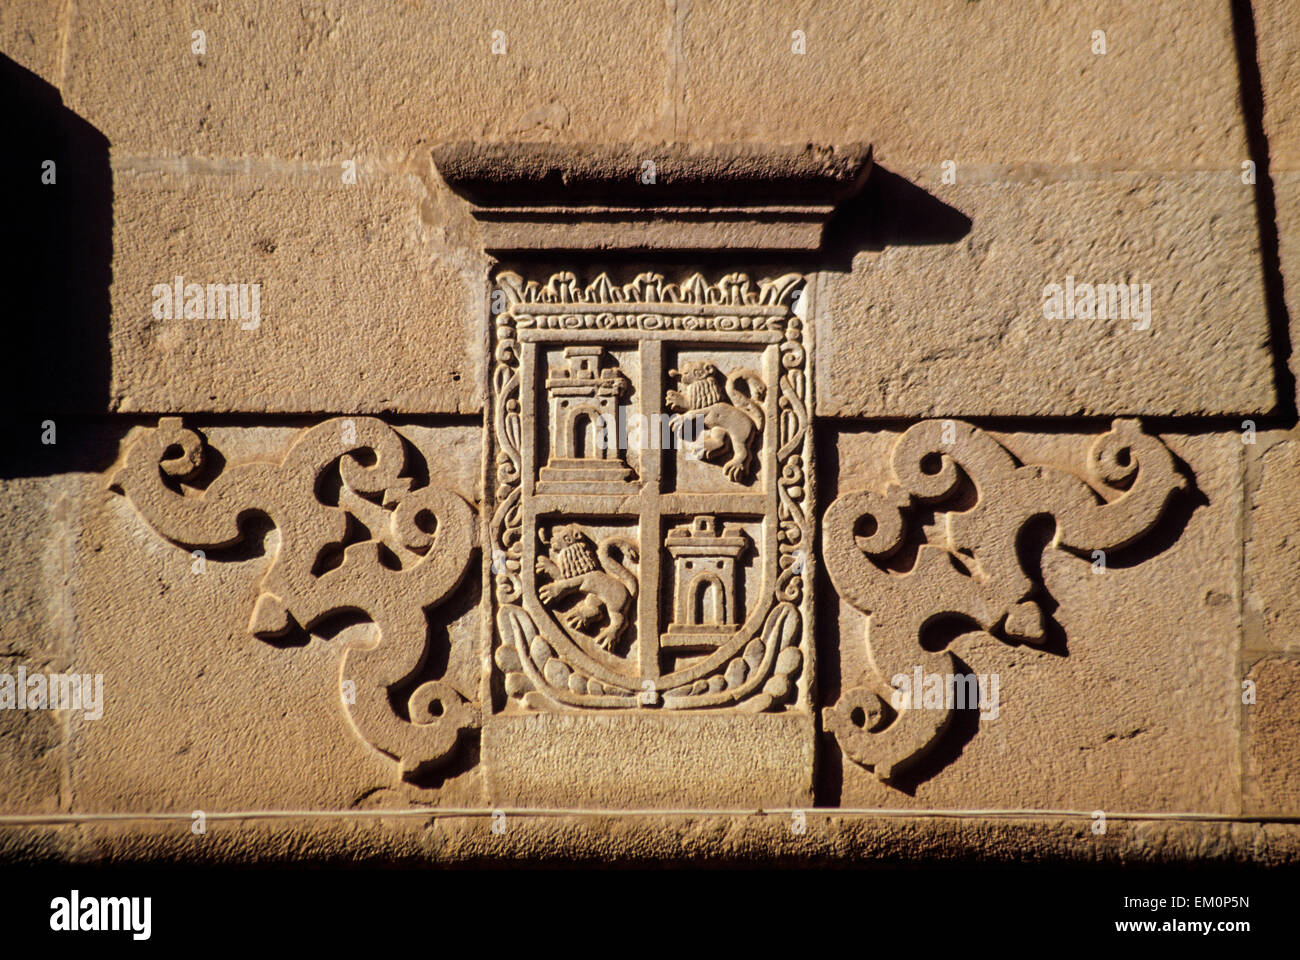 Pérou, Cusco. Armoiries gravées dans la pierre. Banque D'Images